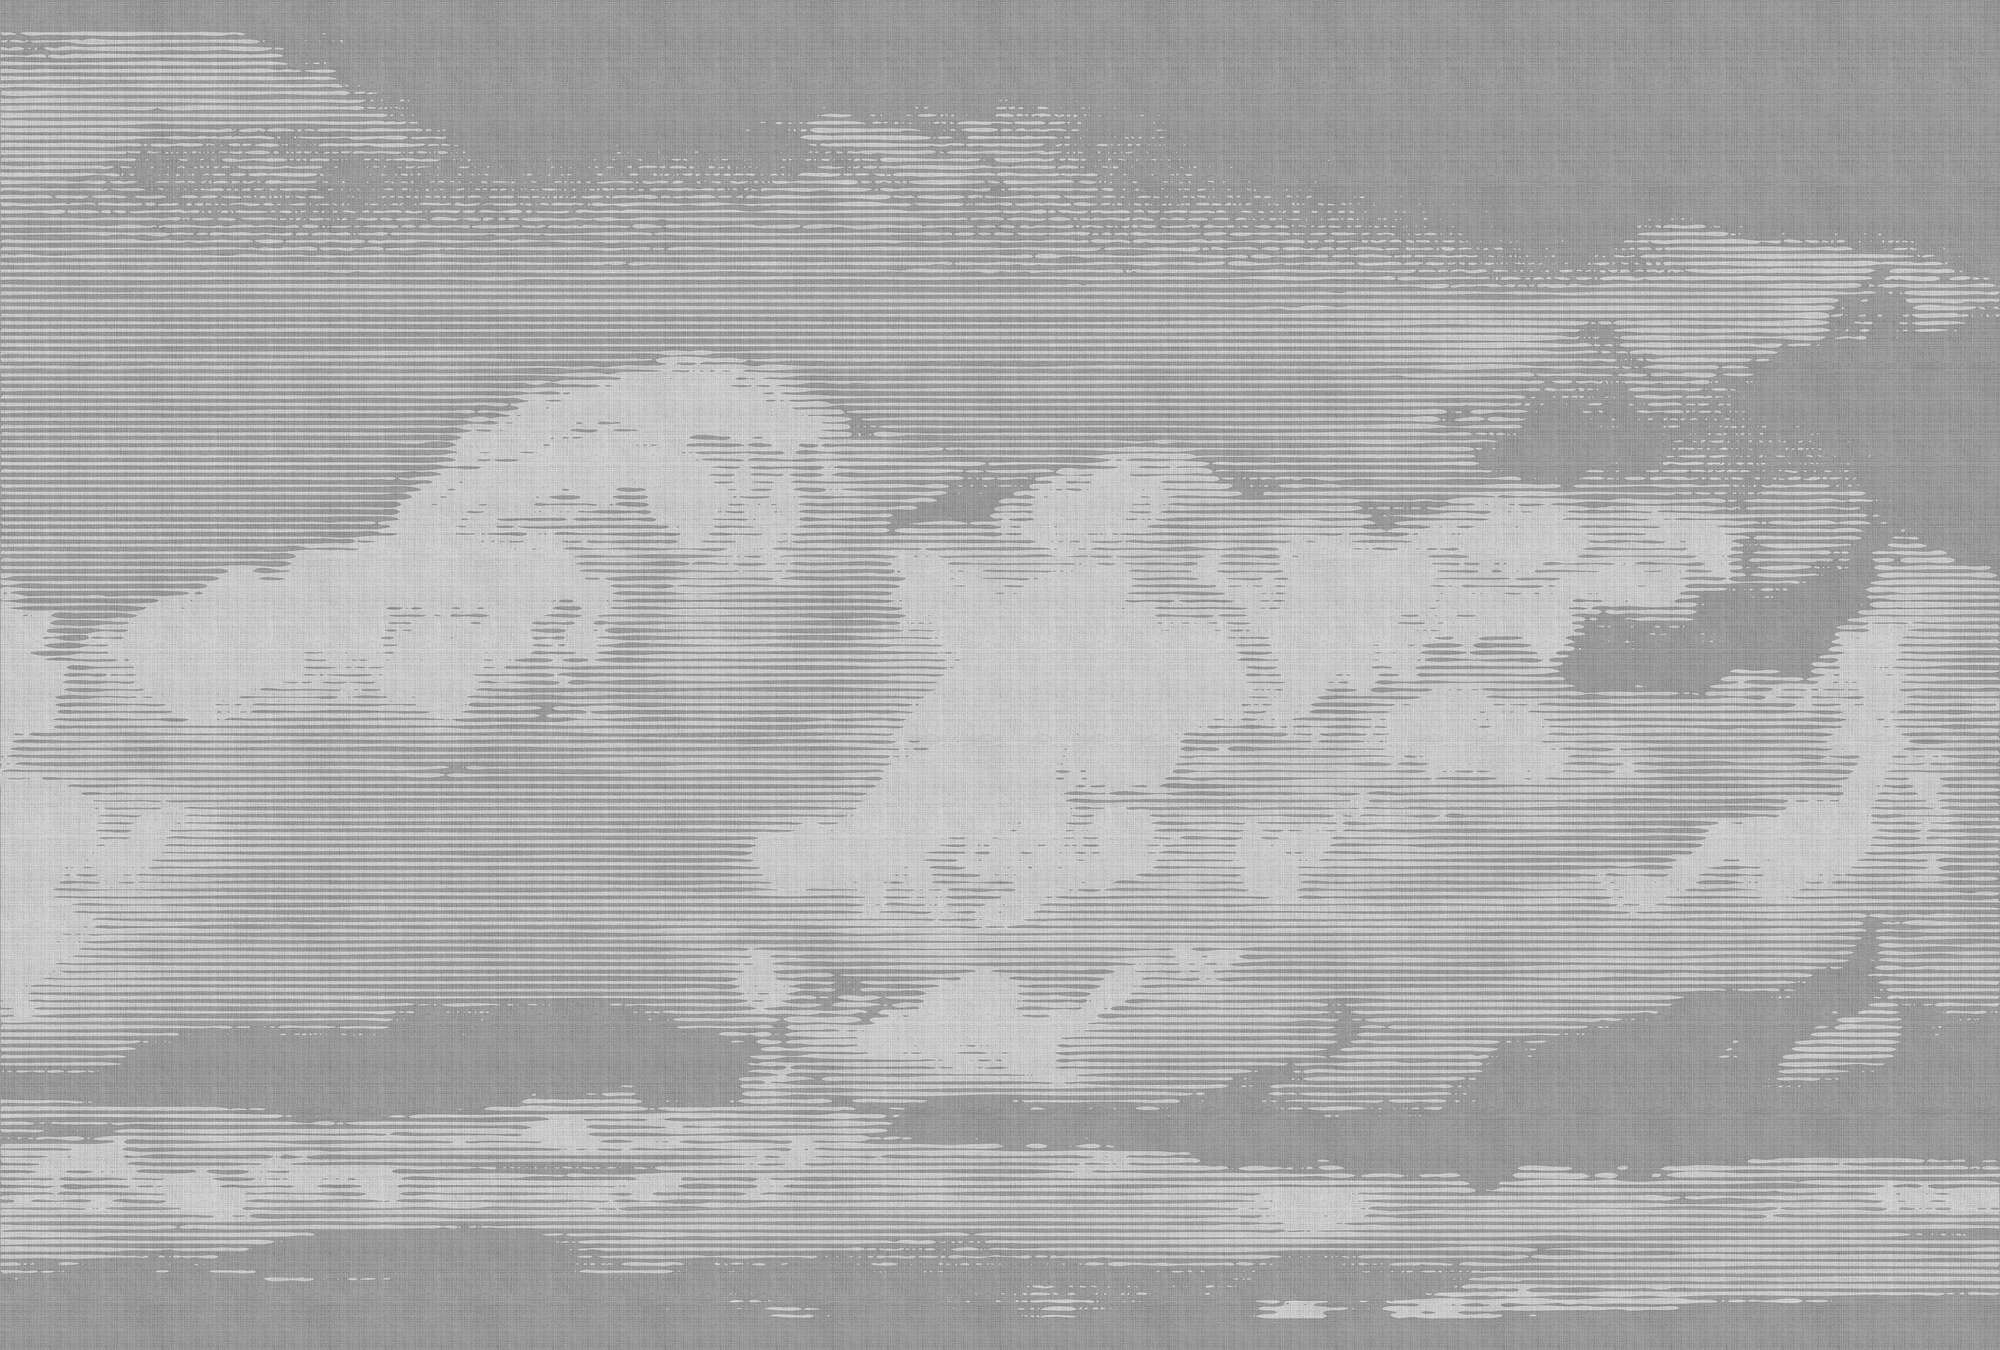             Clouds 2 - Papier peint céleste à structure lin naturel avec motif de nuages - gris, blanc | Intissé lisse mat
        